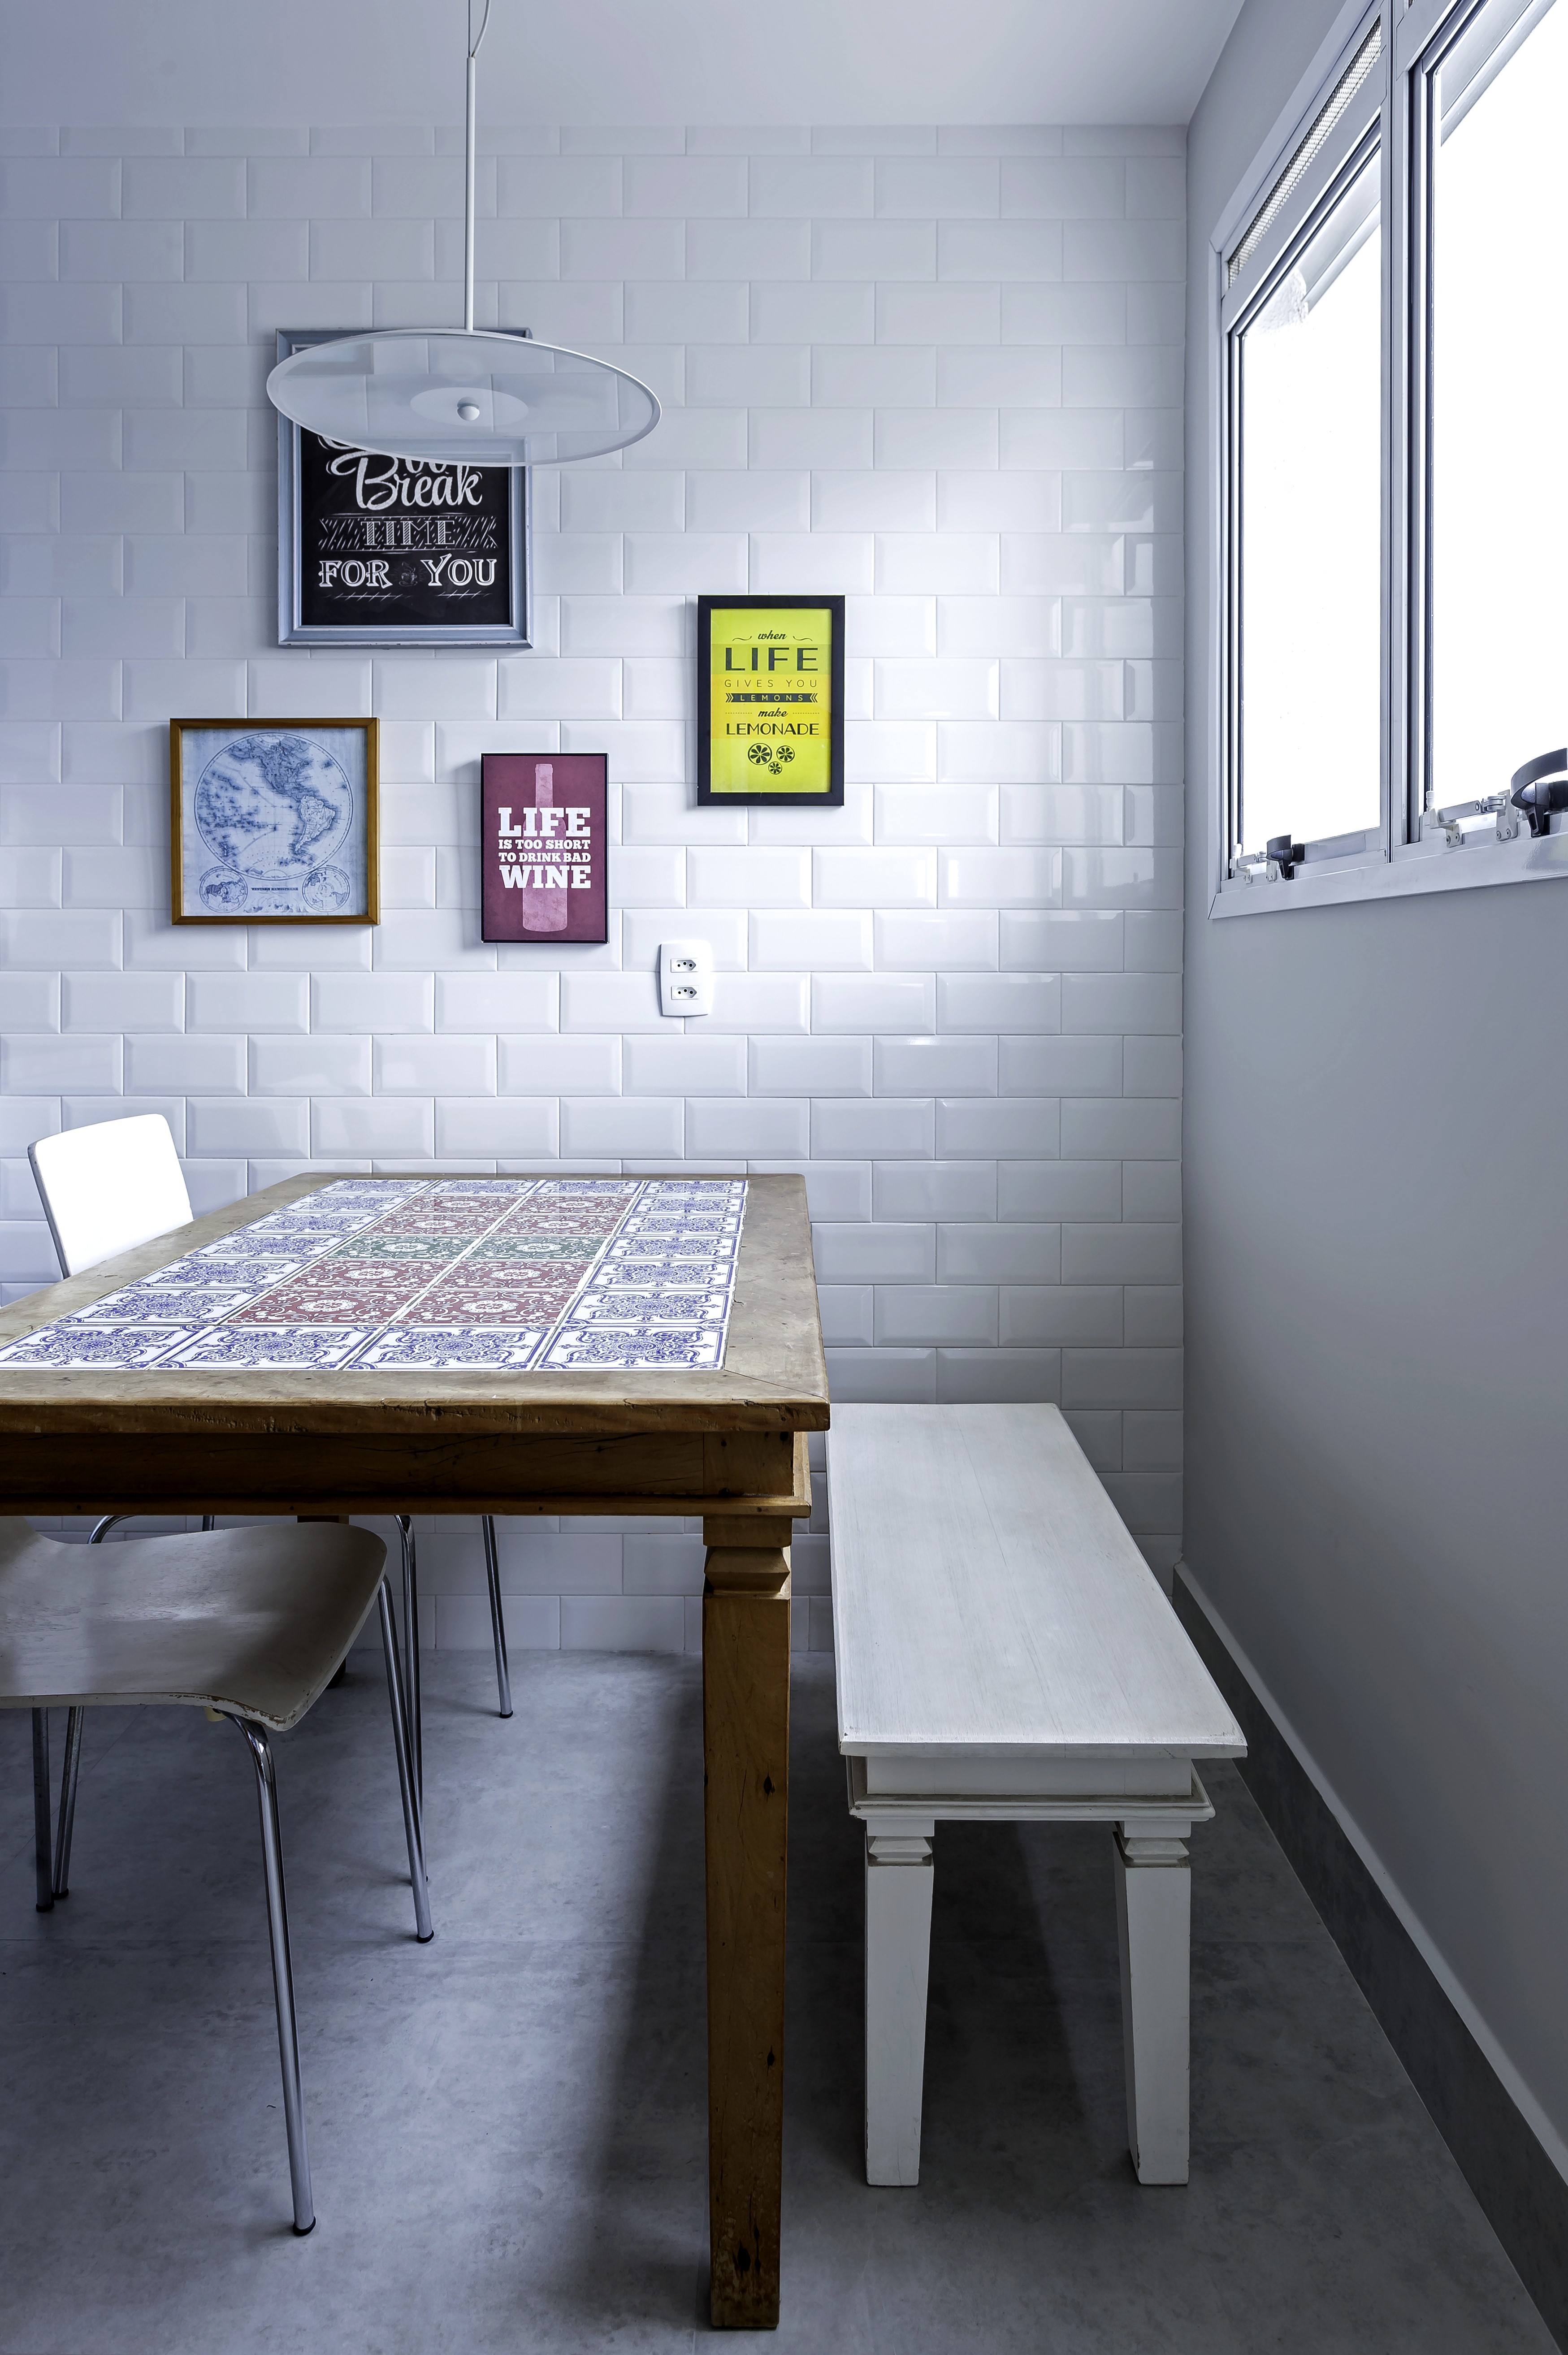 Décor do dia: cozinha com armário azul e subway tiles (Foto: Carlos Piratininga )